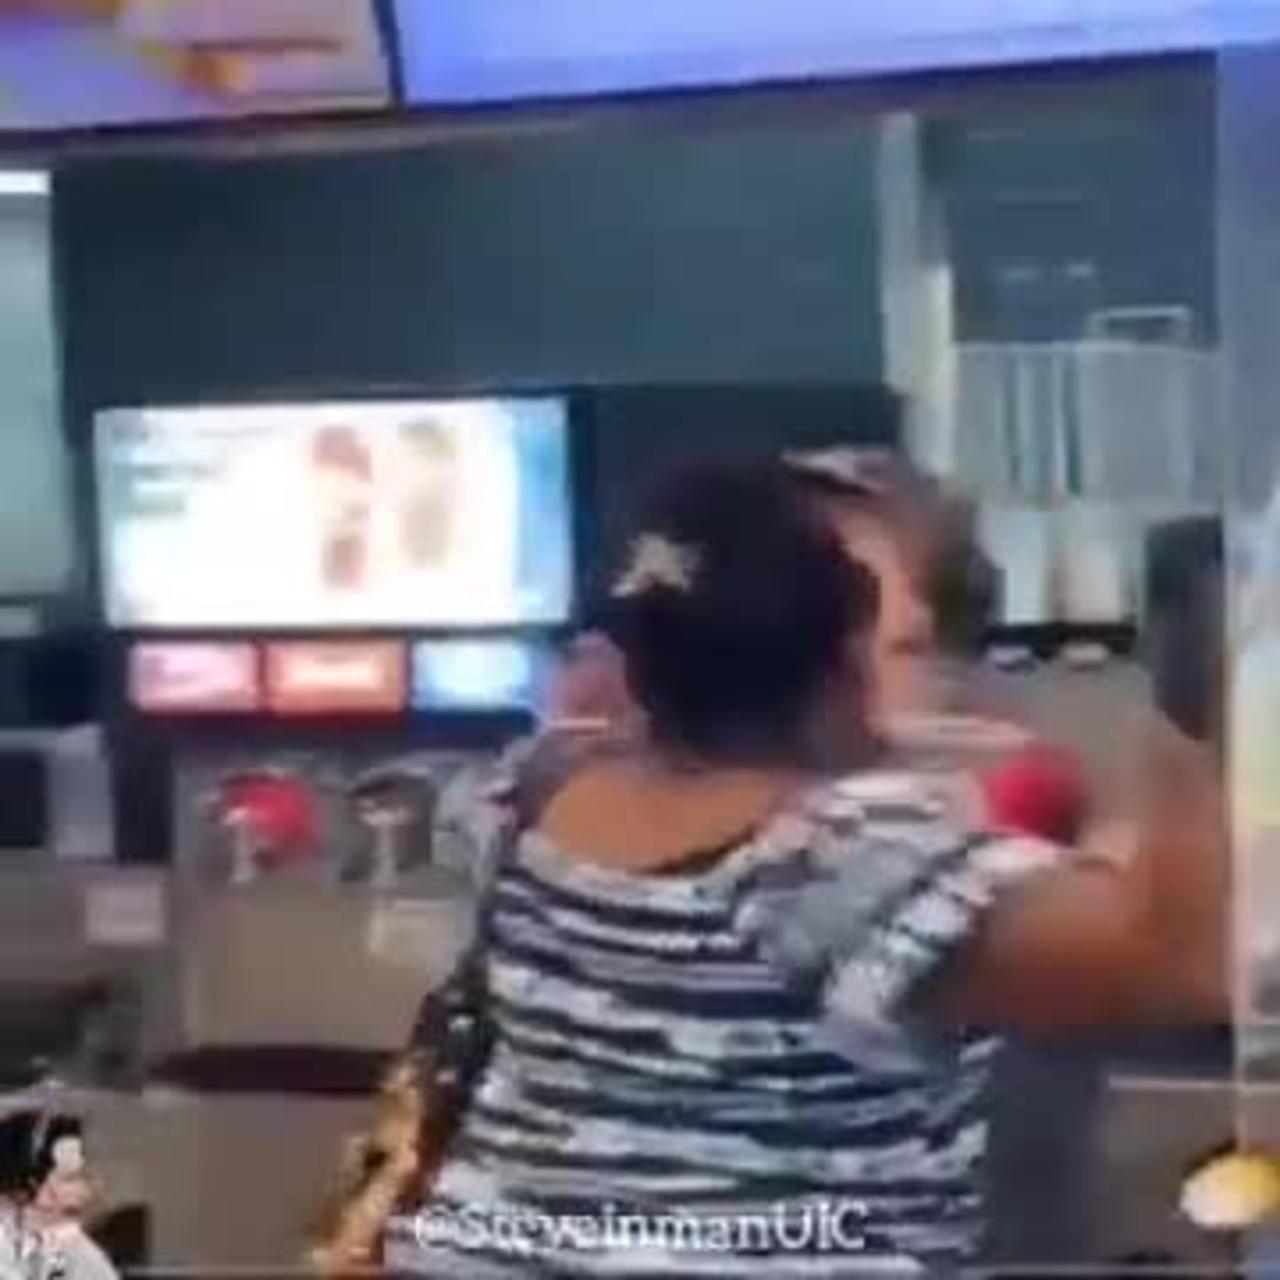 Karen Goes Crazy at McDonald's